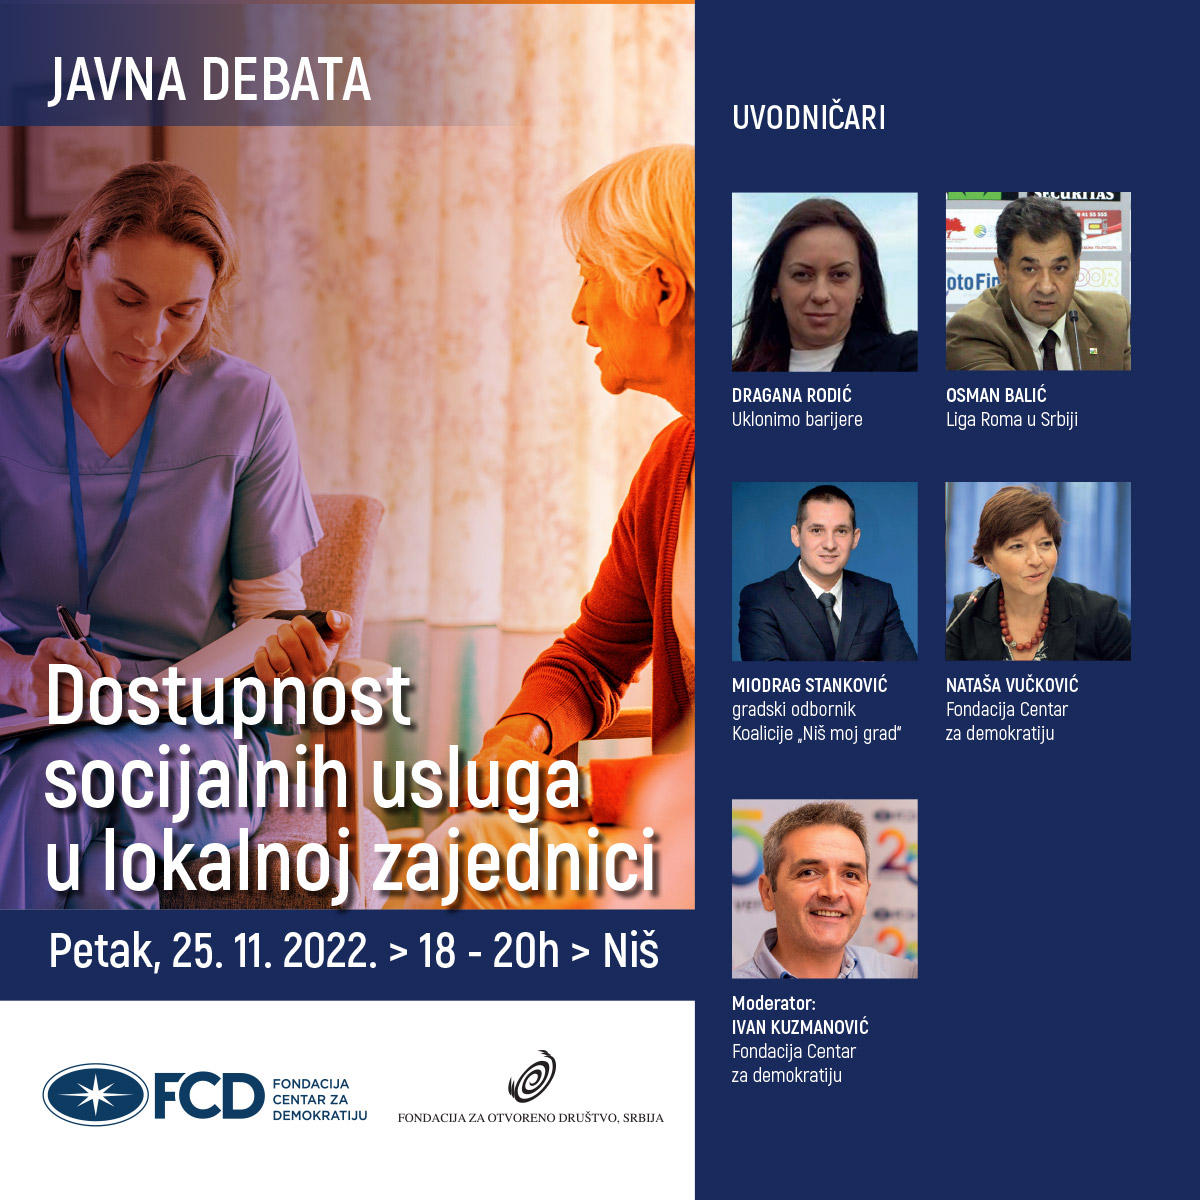 Debata u Nišu „Dostupnost socijalnih usluga u lokalnoj zajednici“ (25.11.2022)